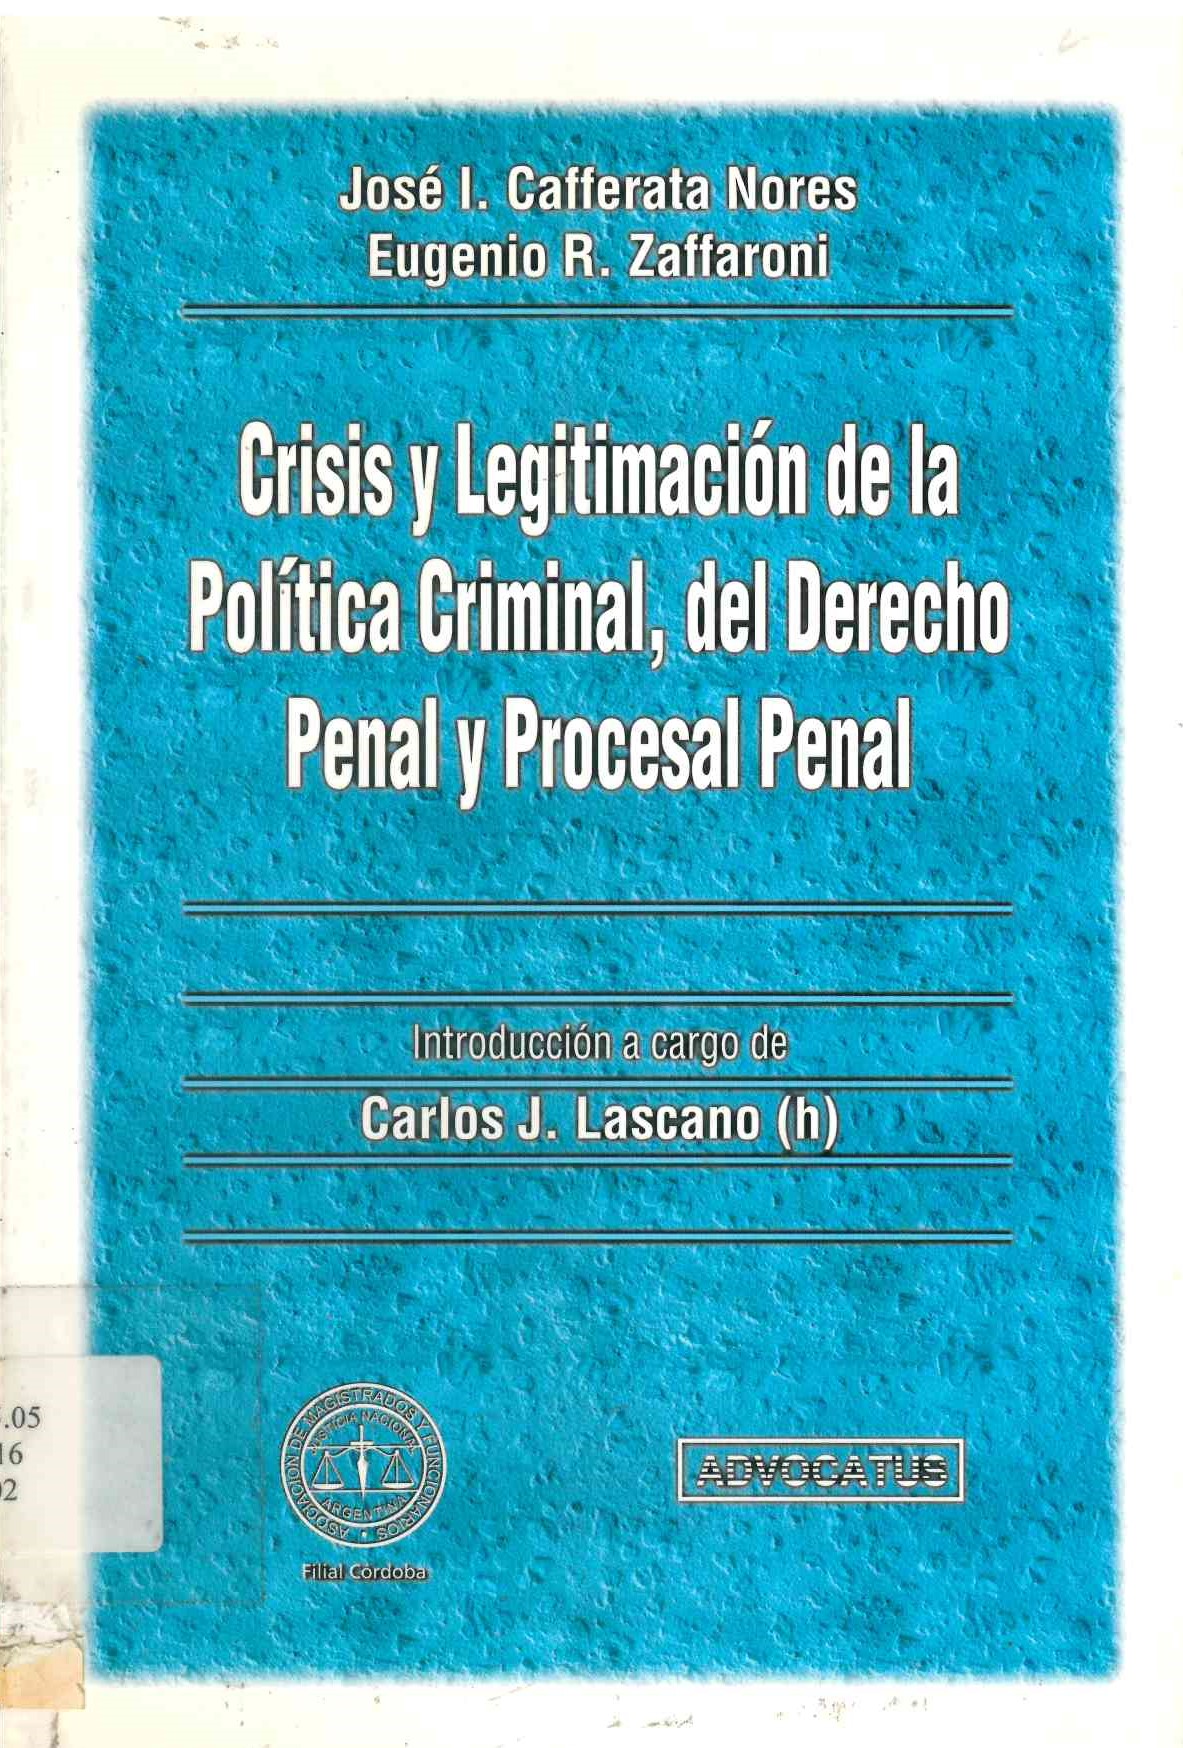 Crisis y legitimación de la política criminal, del derecho penal y procesal penal.